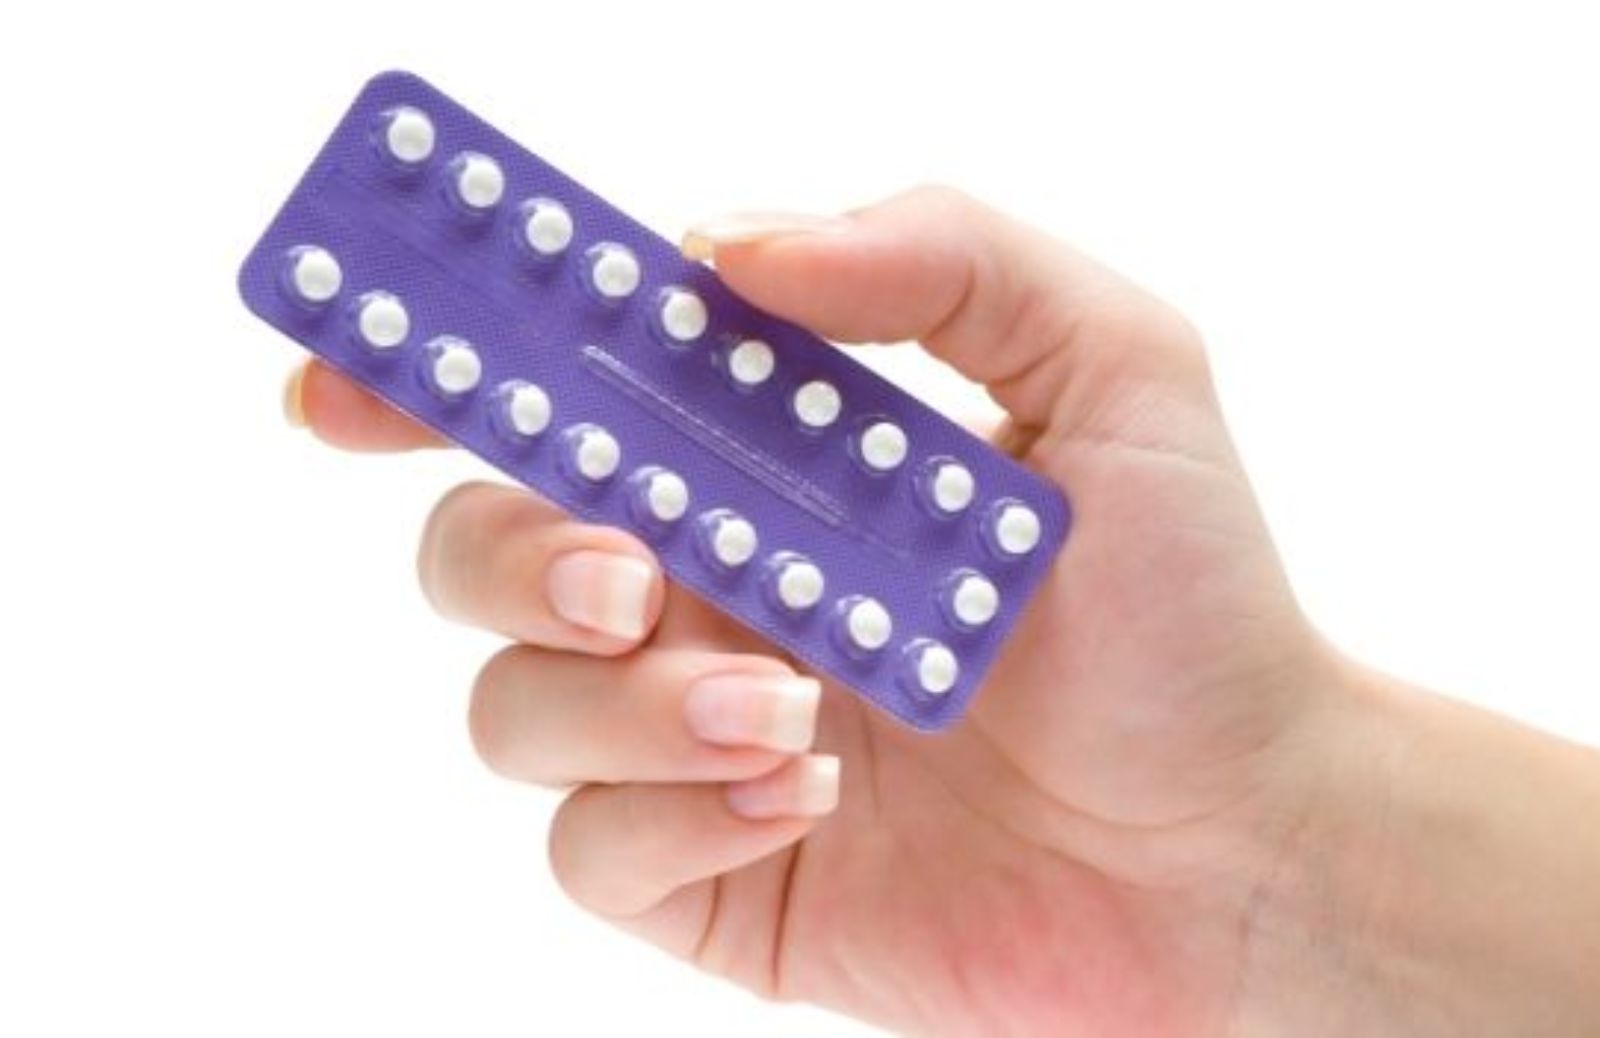 Come la pillola anticoncezionale influenza la scelta del partner